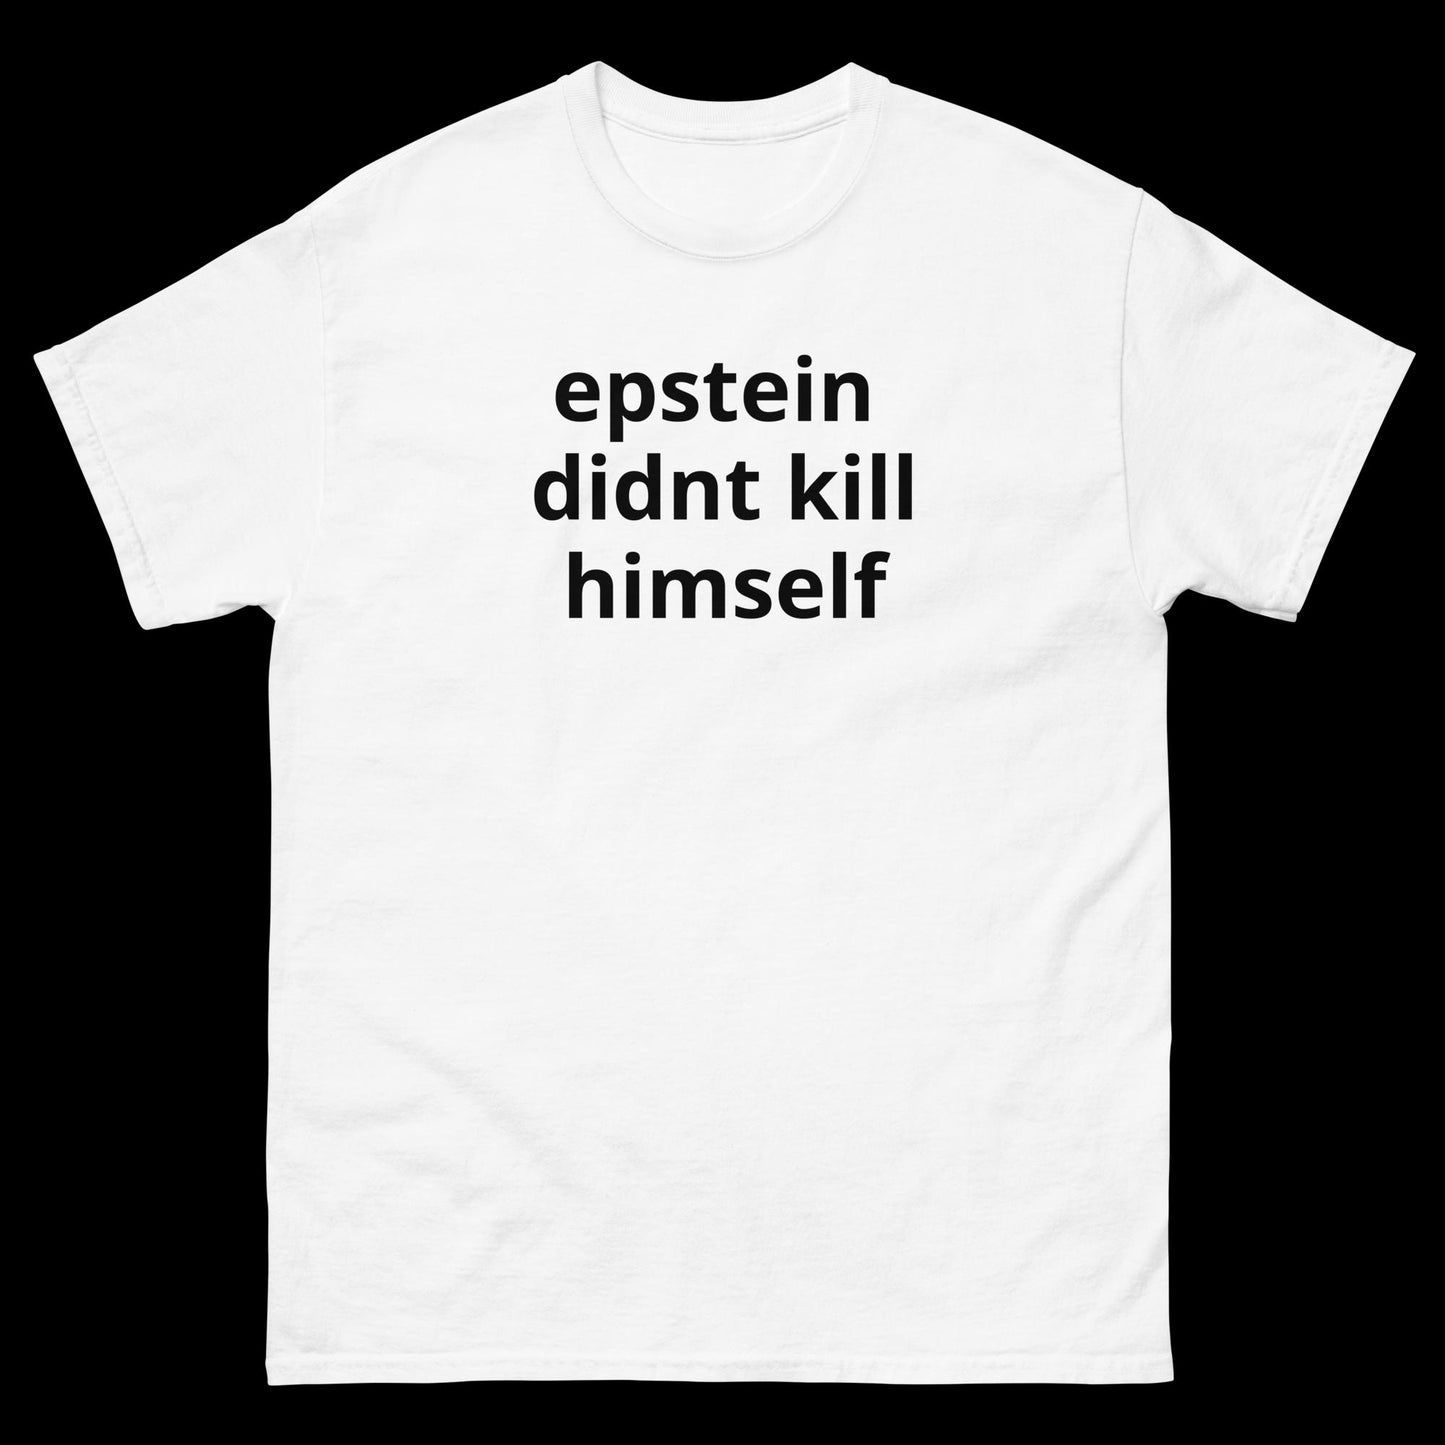 epstein didnt kill himself